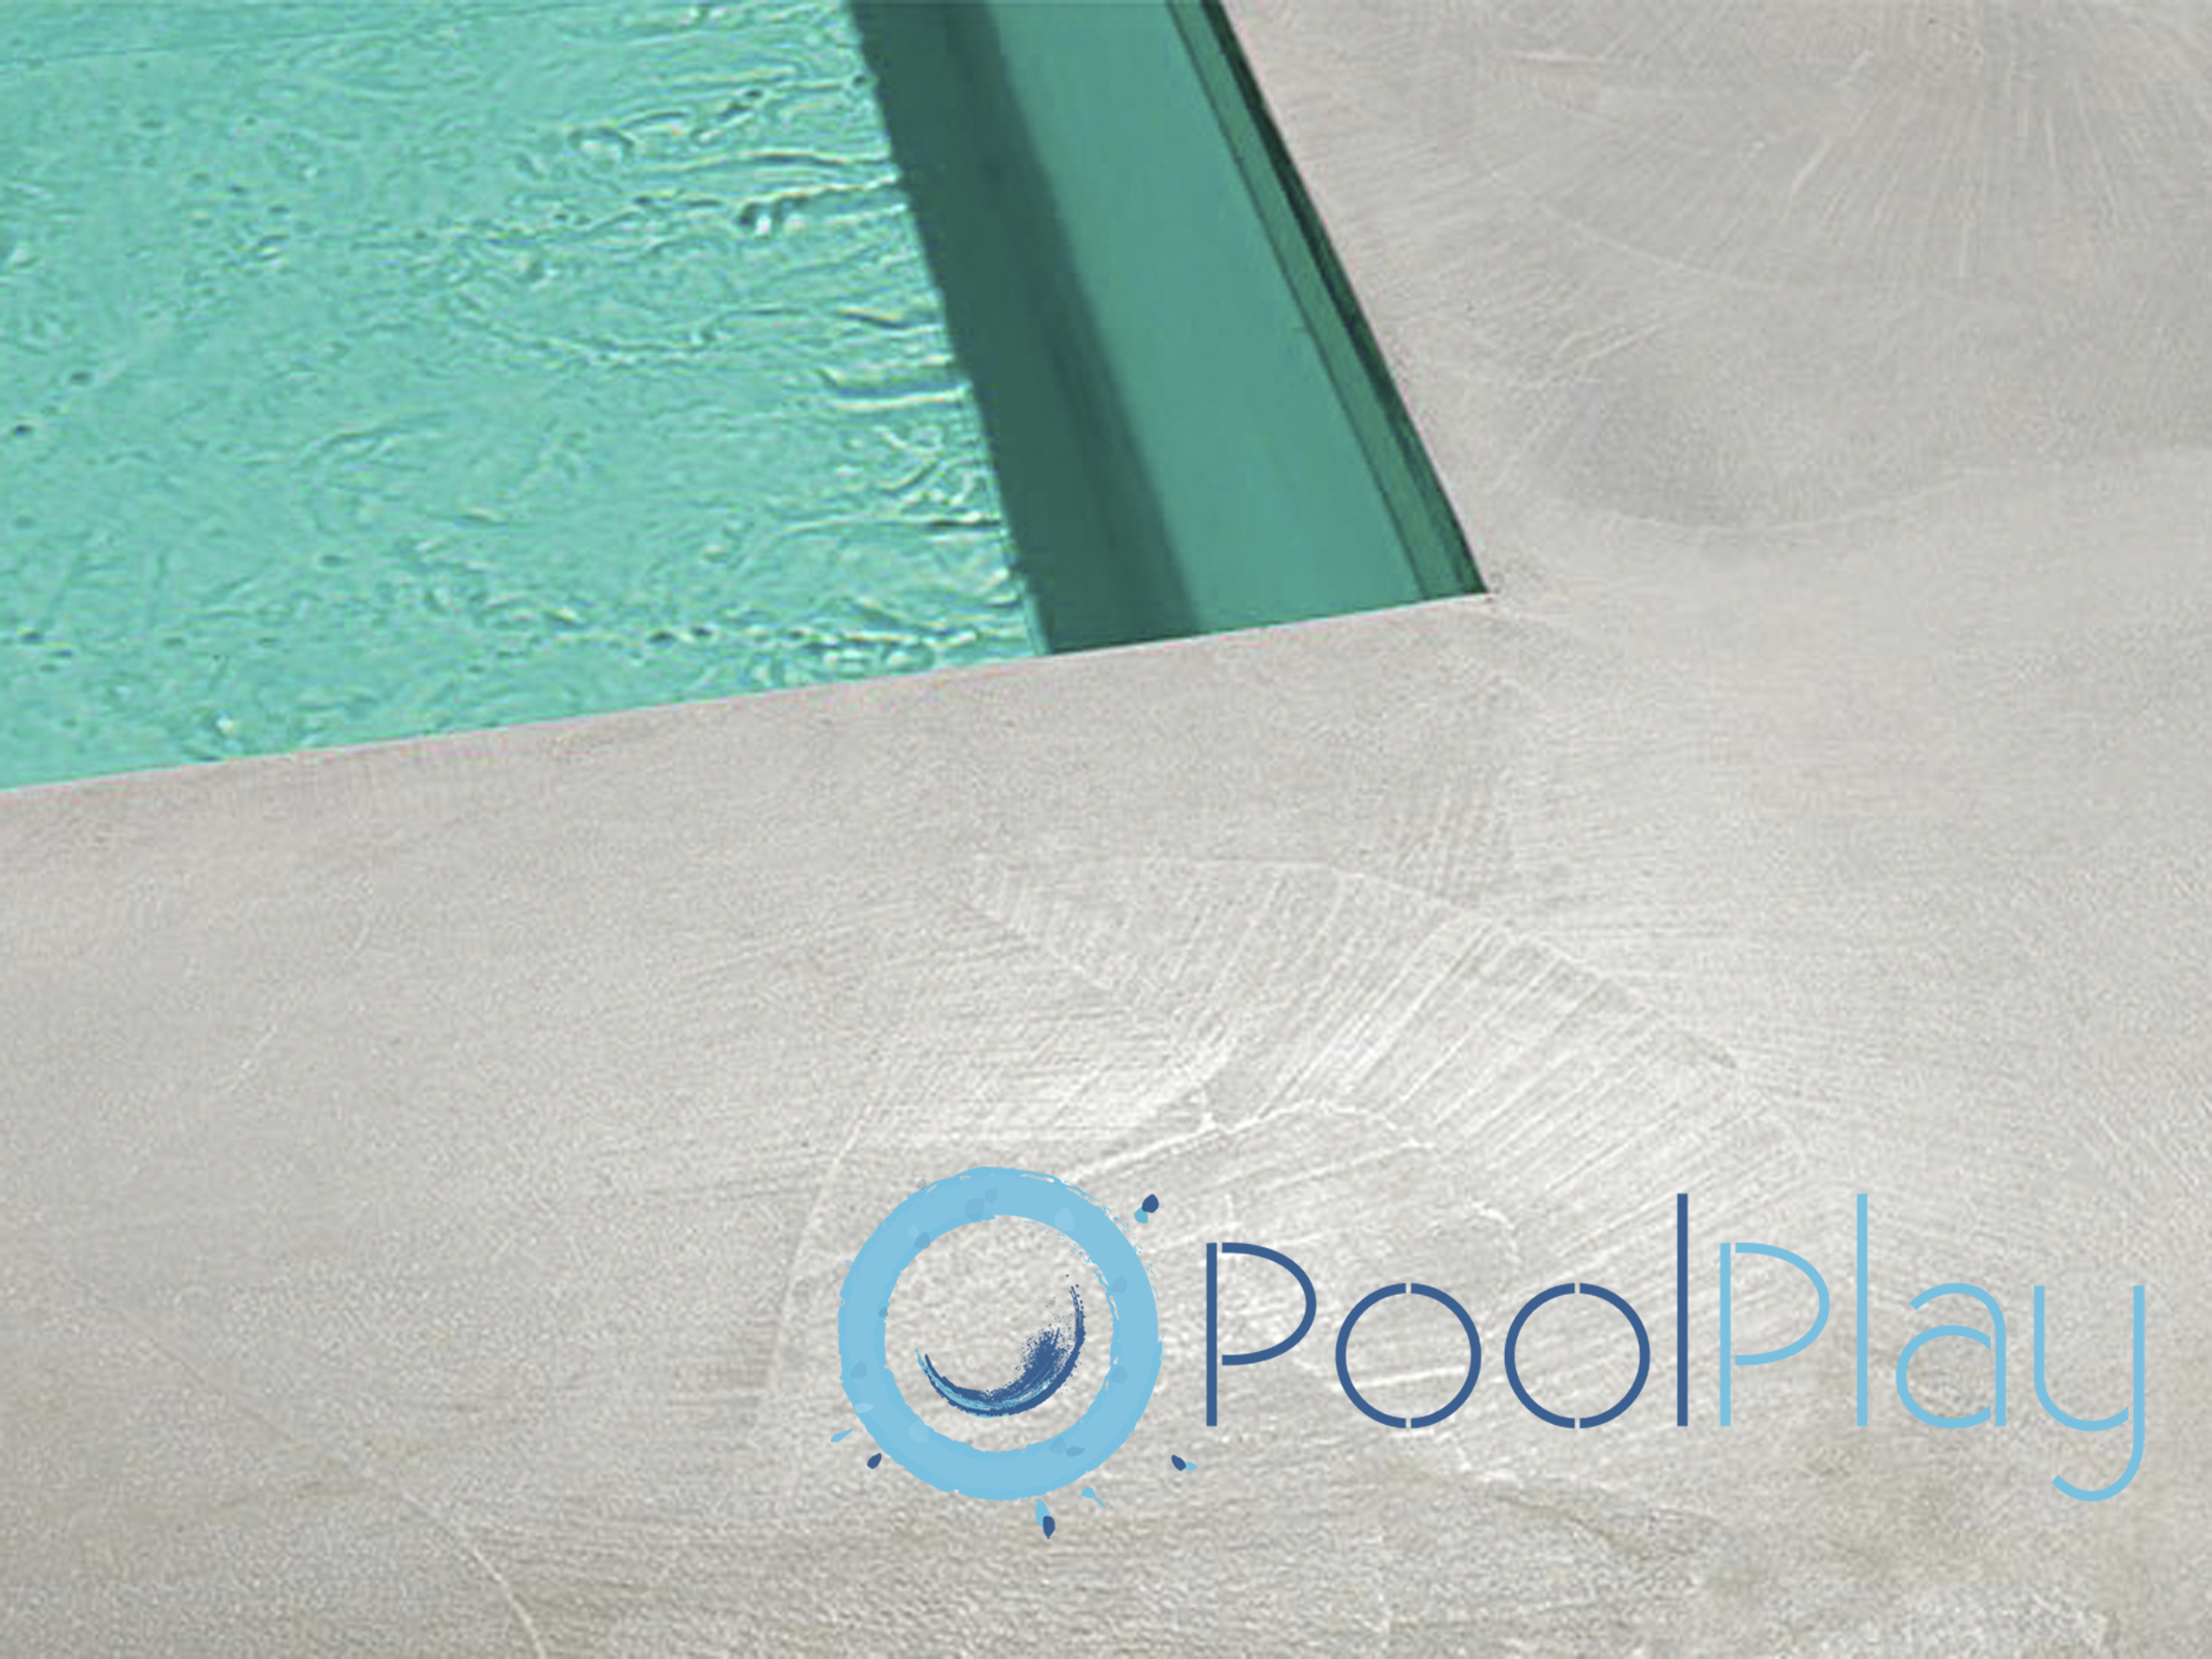 En PoolPlay somos expertos en la construcción de piscinas de microcemento en Valencia